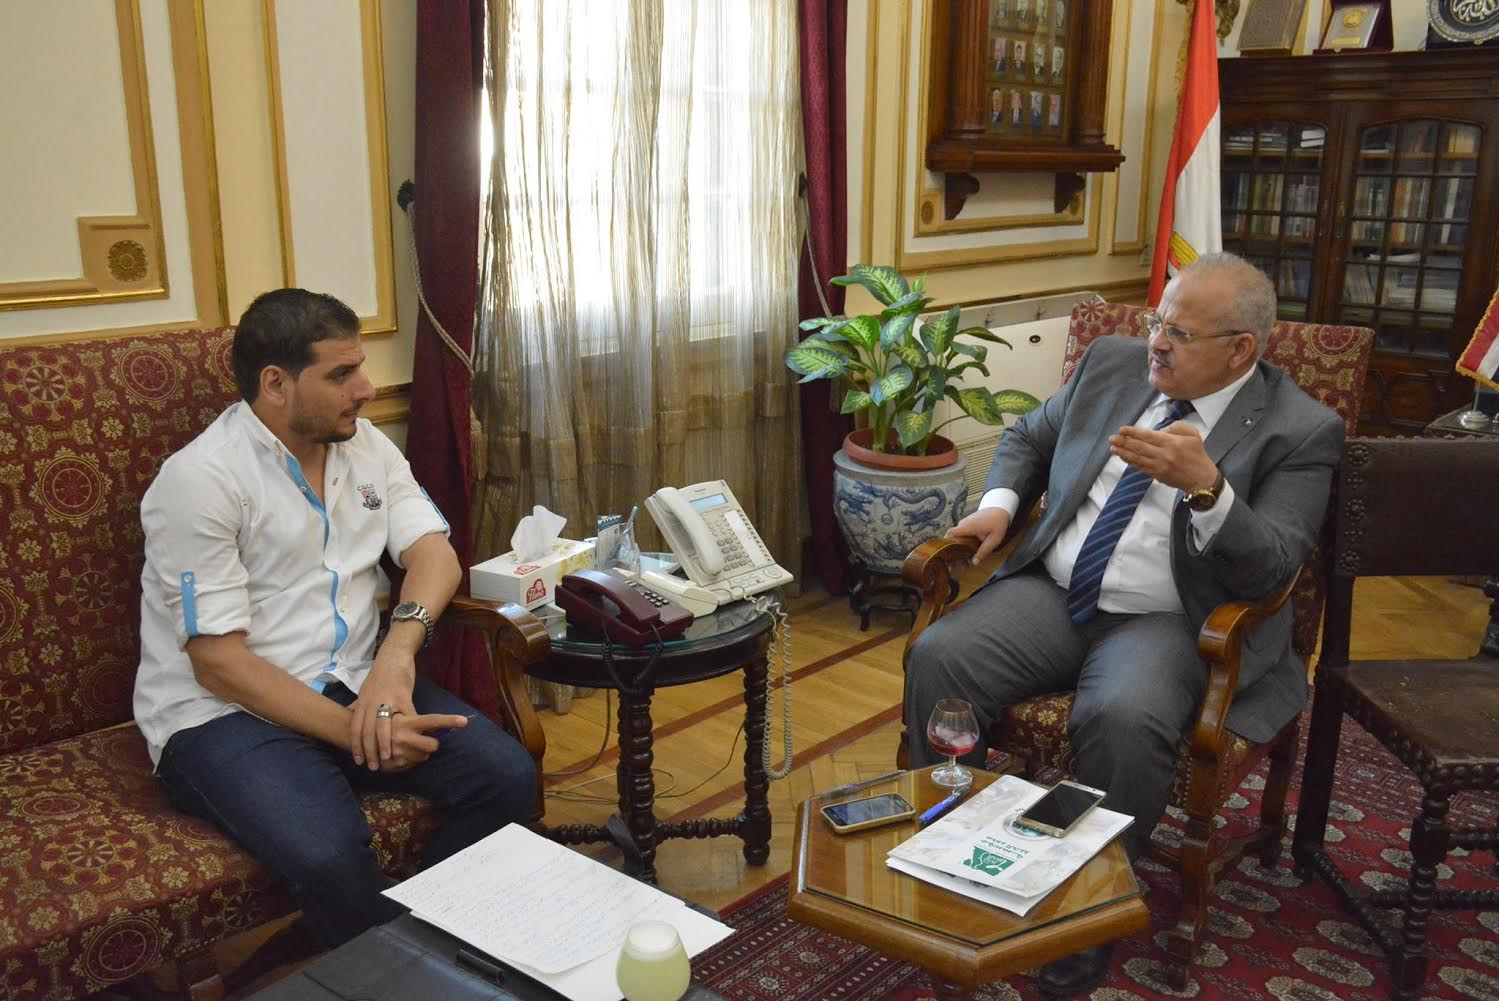 محرر "بوابة الأهرام" أثناء حواره مع رئيس جامعة القاهرة